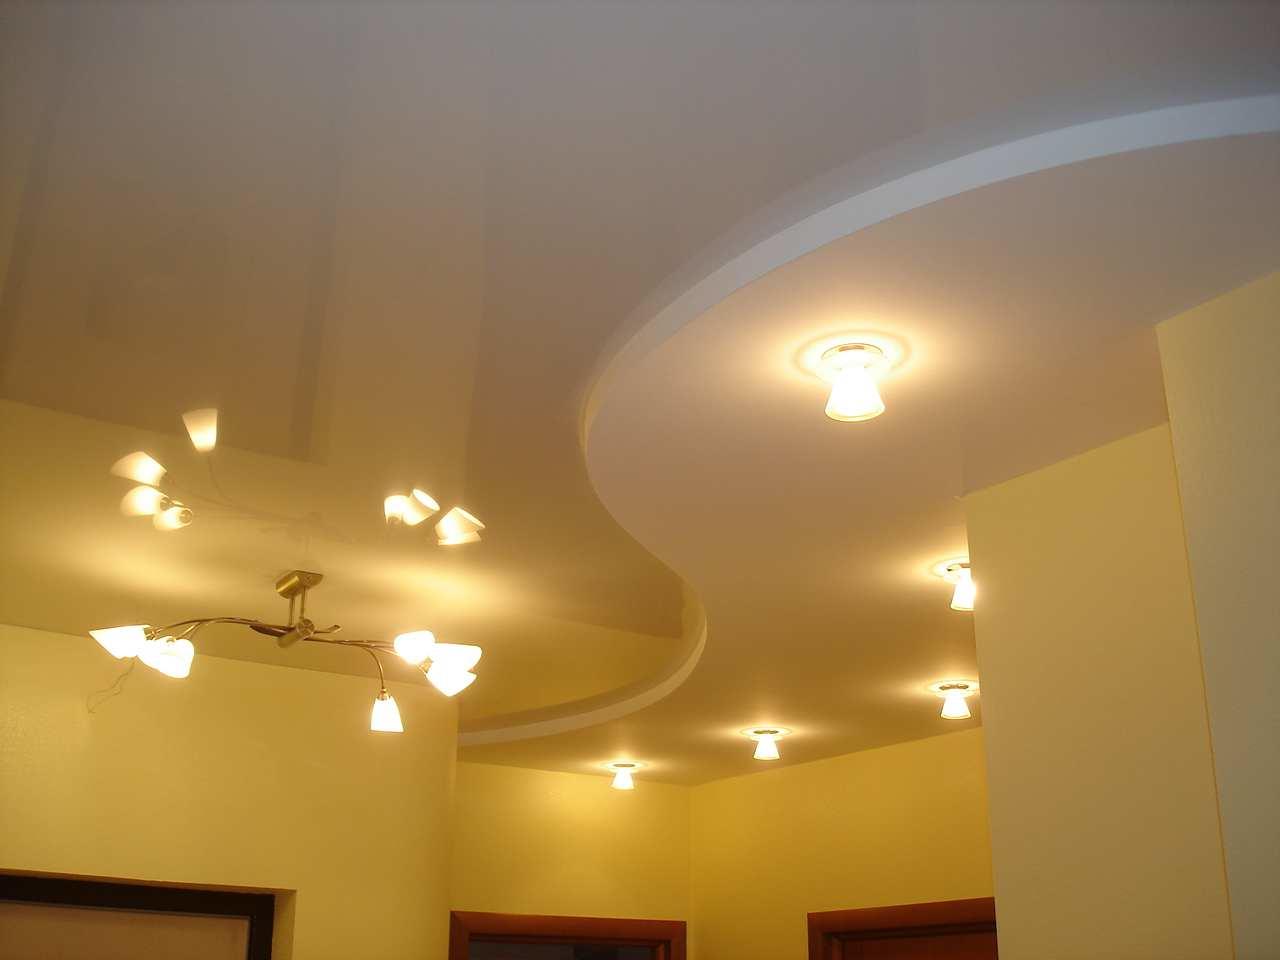 Для более качественной освещенности, лучше повесить на потолок люстру или лампу